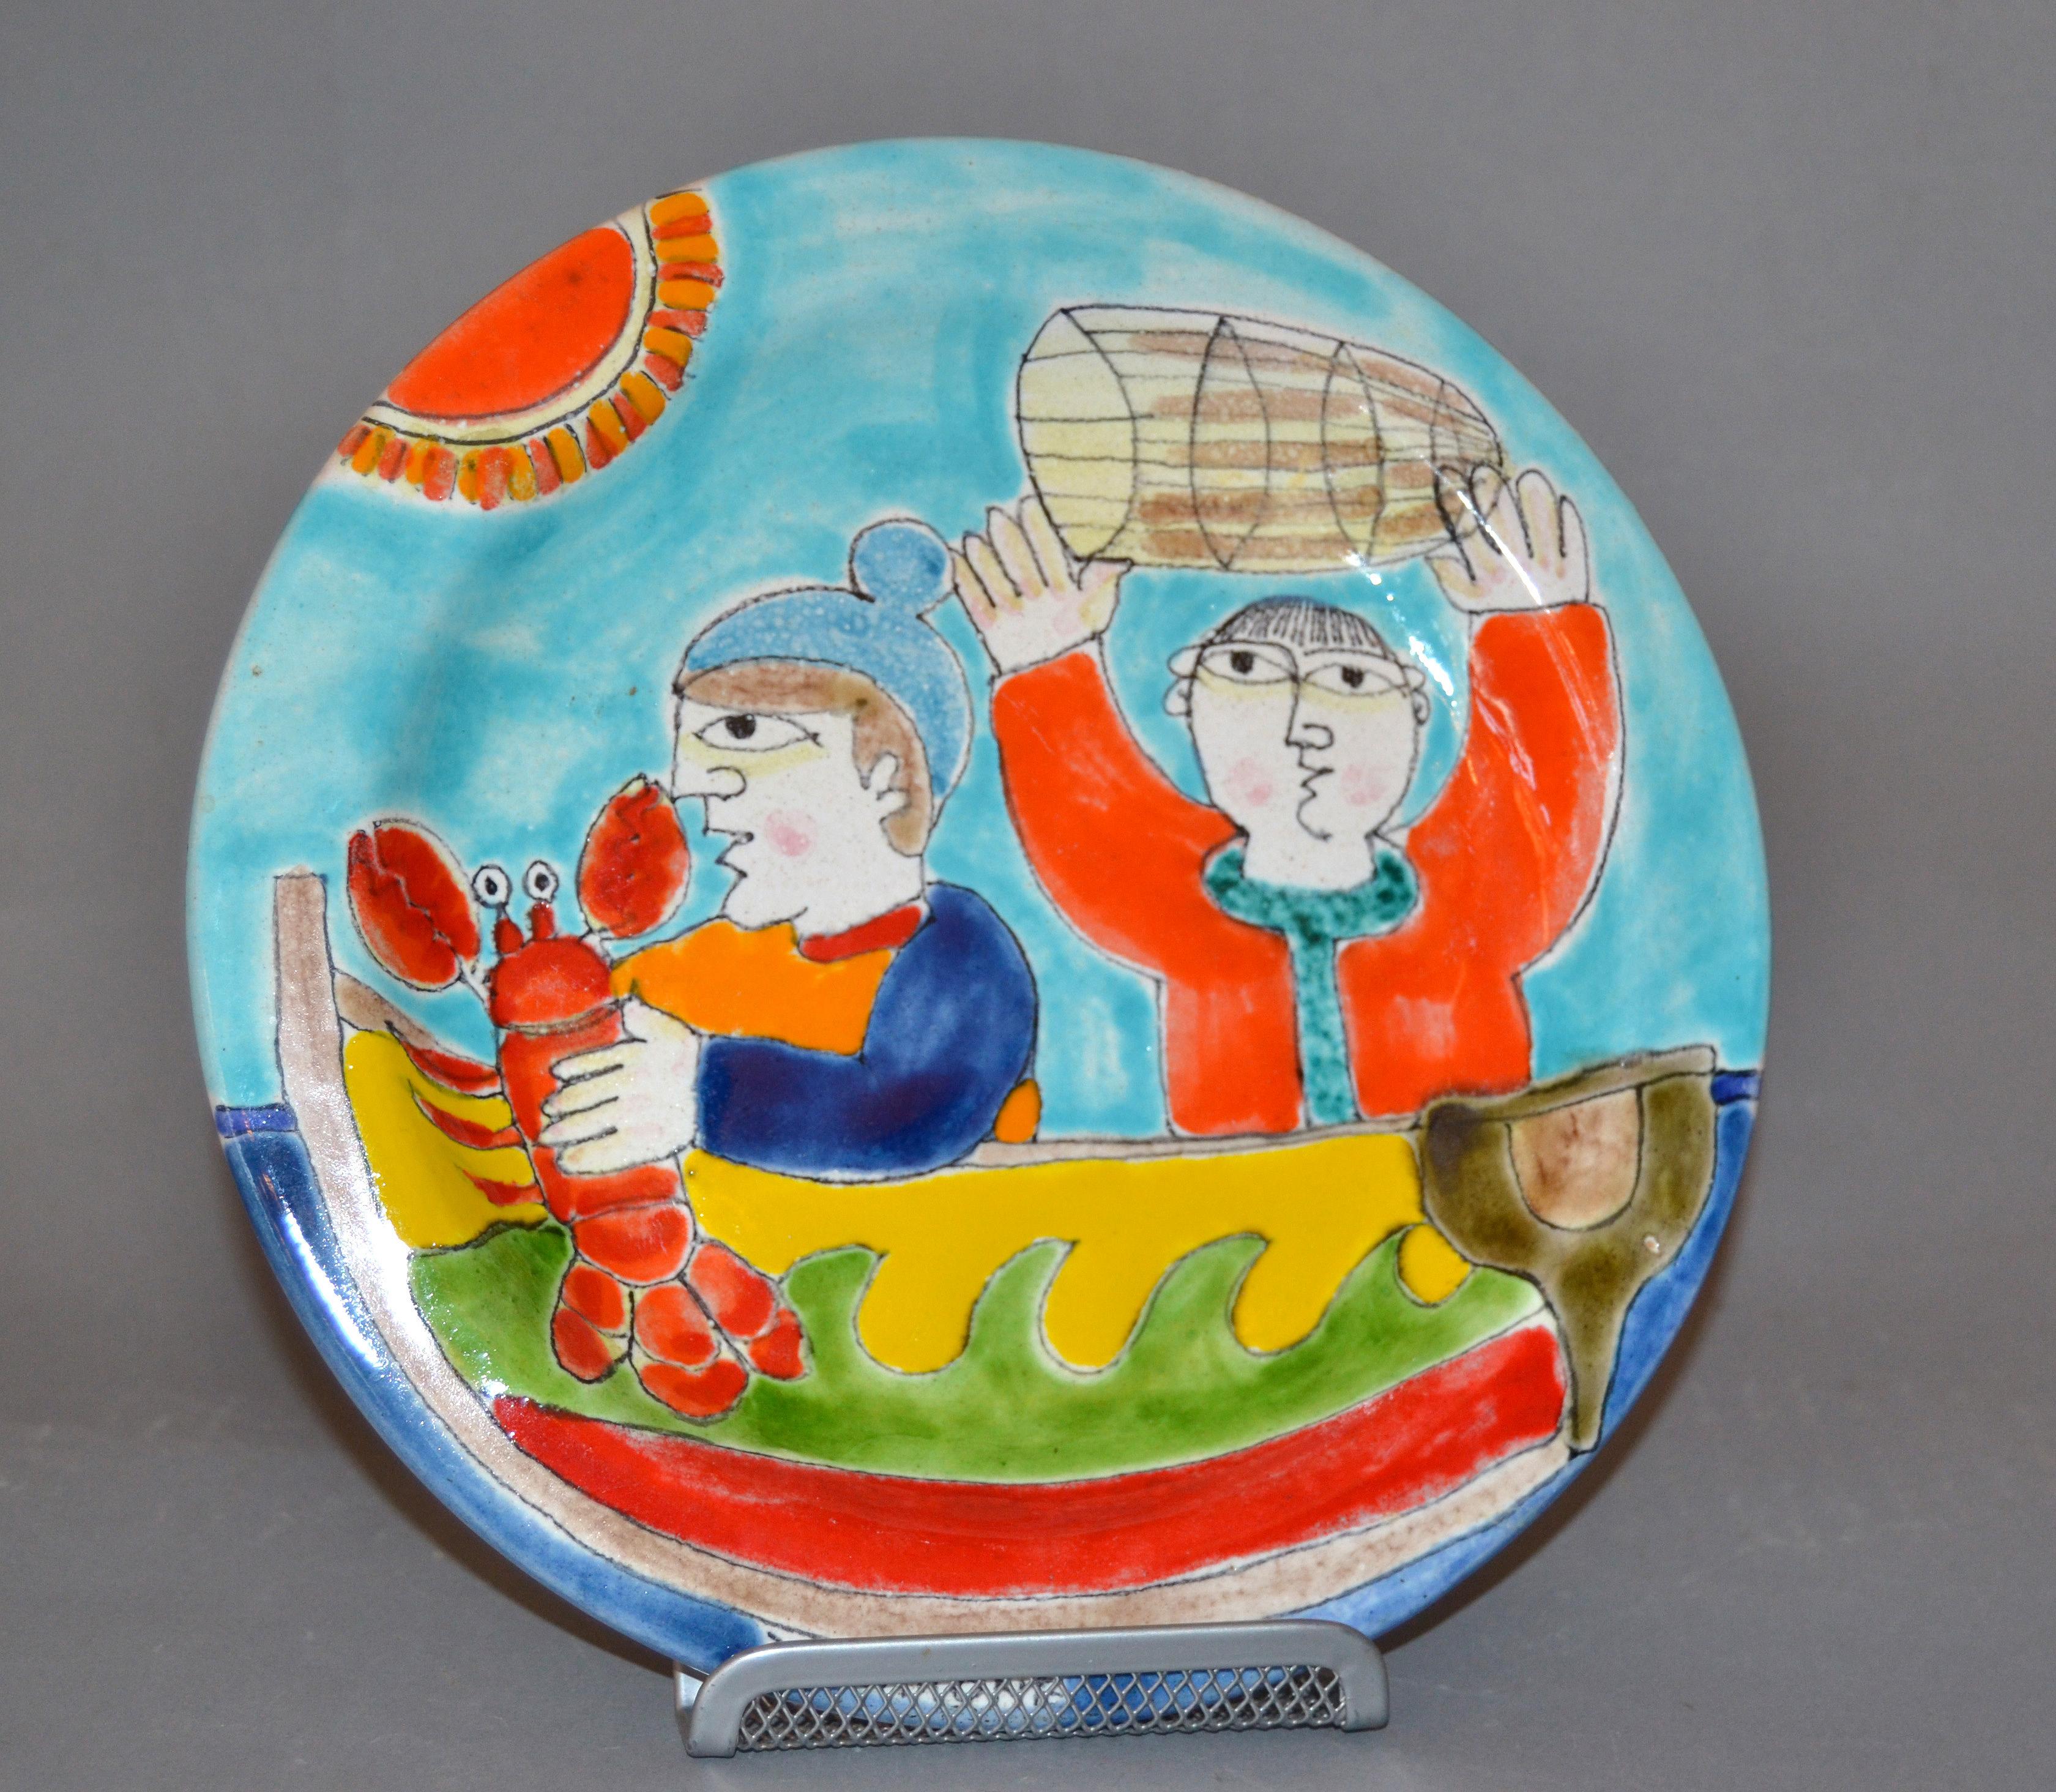 Original italienische Giovanni DeSimone handbemalte Keramik, runder Dekorteller mit einer Szene von Fischern, die einen Hummer mit einem Korb fangen.
Der Teller ist glasiert und sehr bunt.
Herstellermarke auf der Platte sowie Markierung und